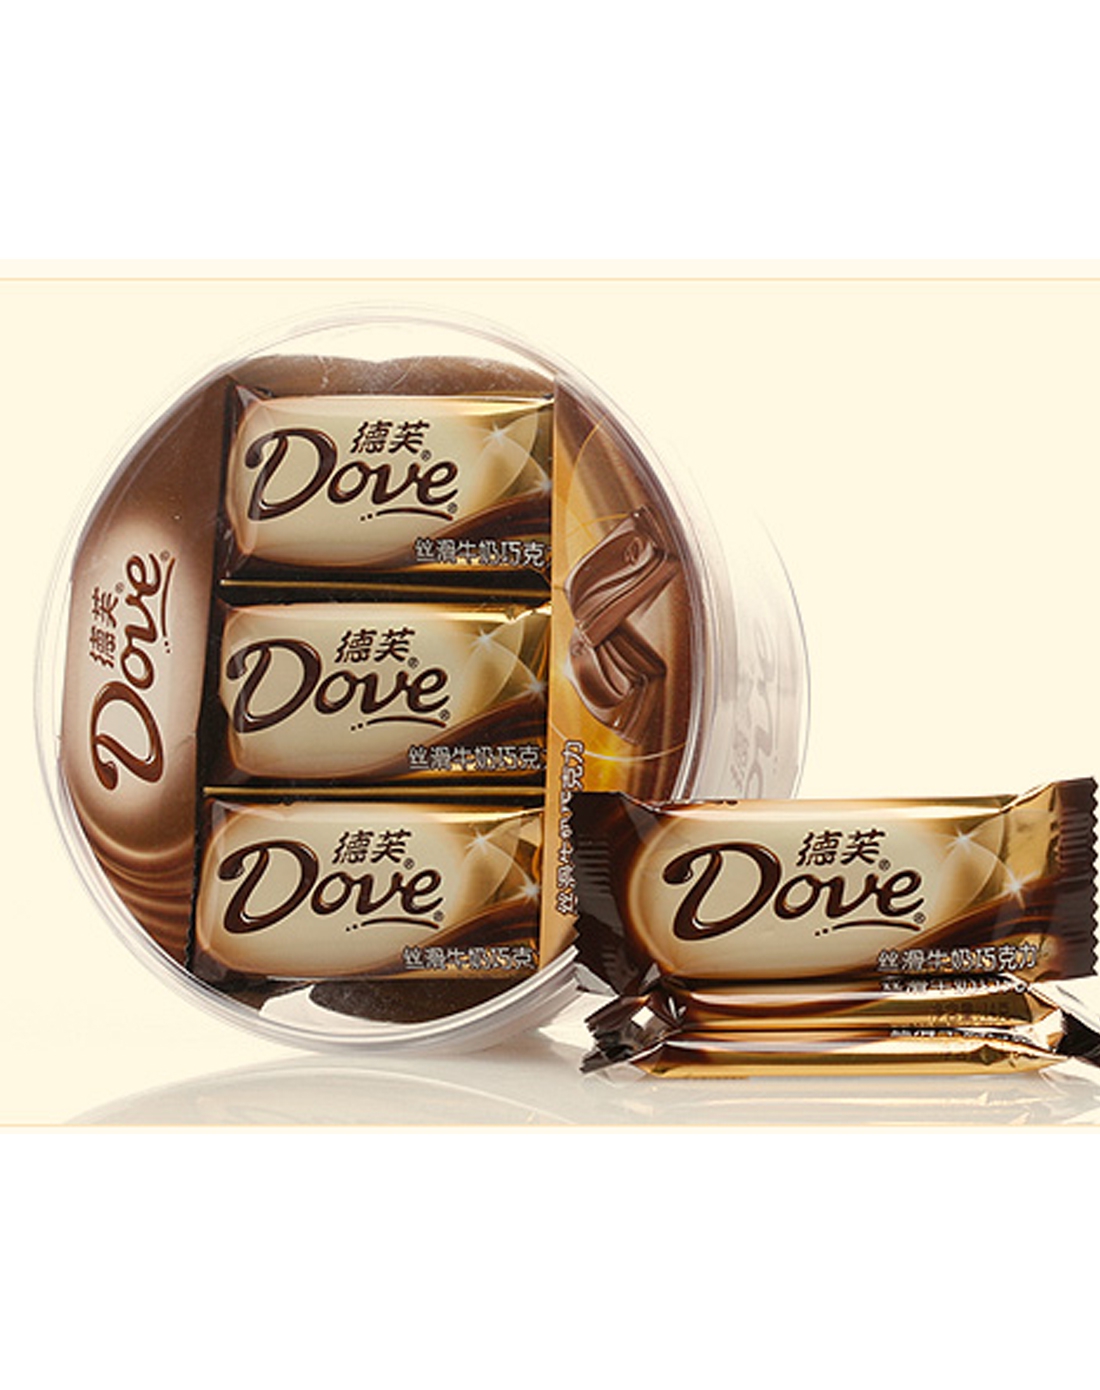 德芙巧克力 Dove正品 丝滑牛奶散装巧克力结婚喜糖 德芙散装500g_沃达帝食品专营店